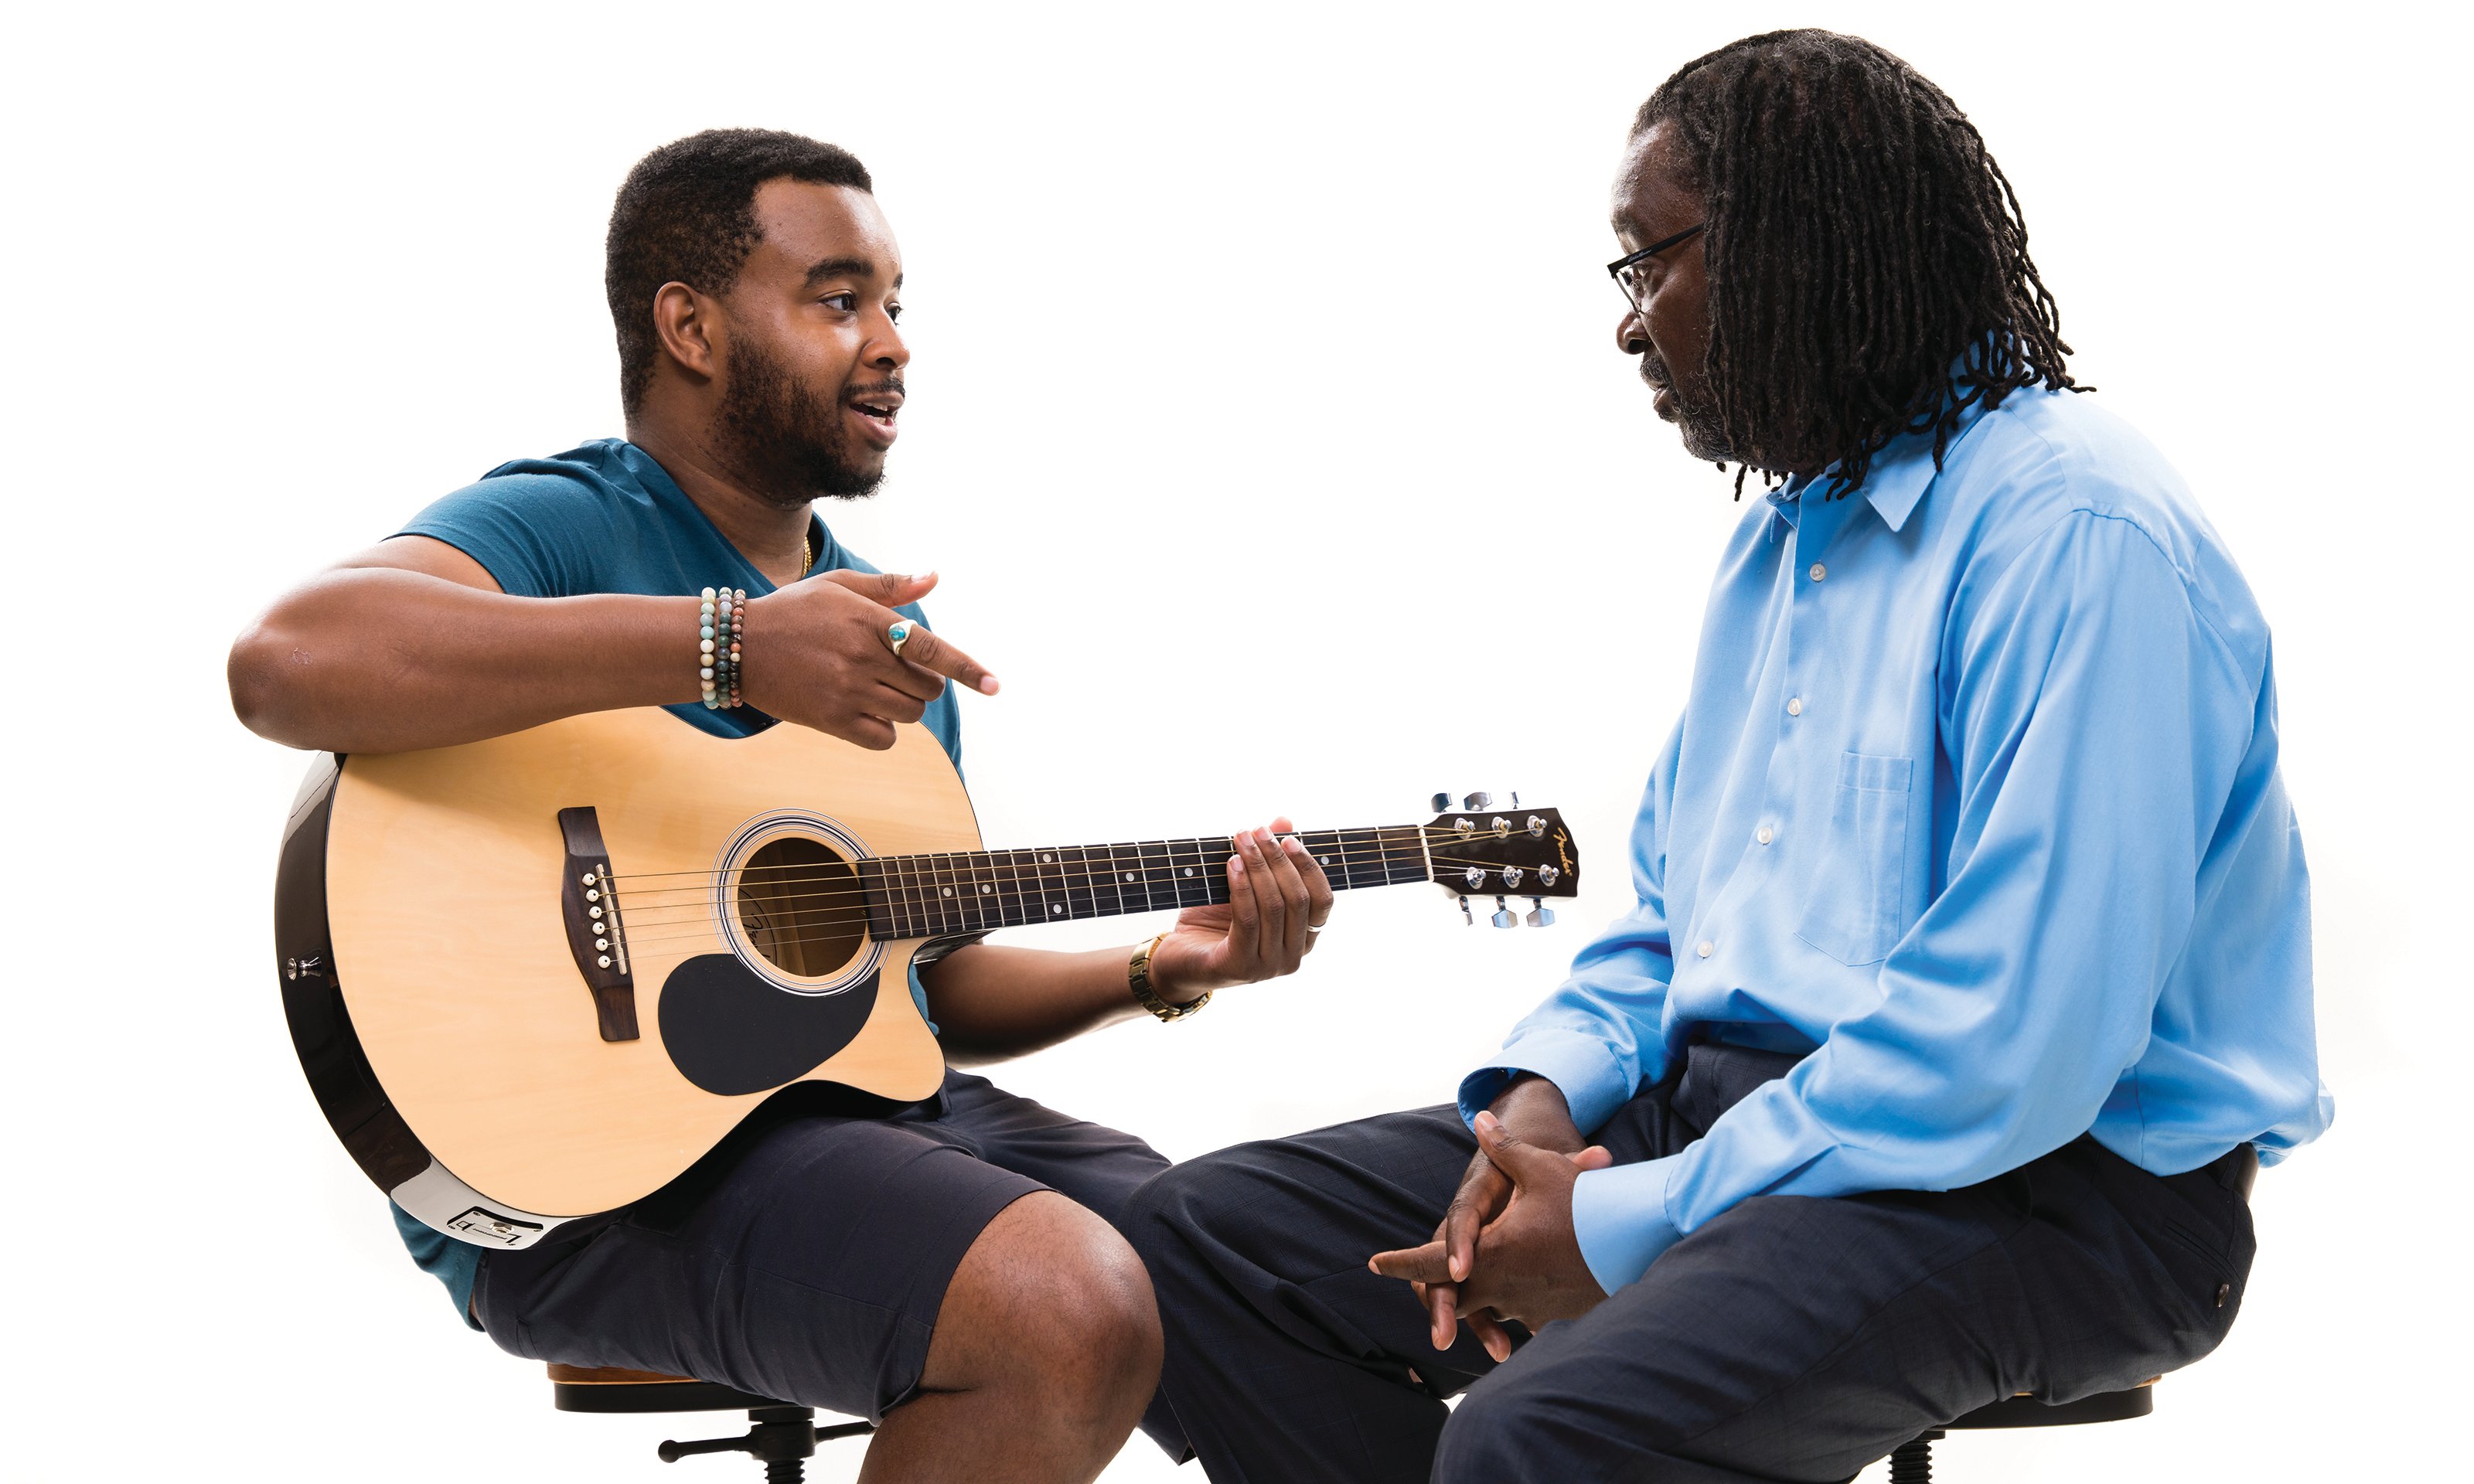 一个男人拿着吉他坐着和另一个男人说话。